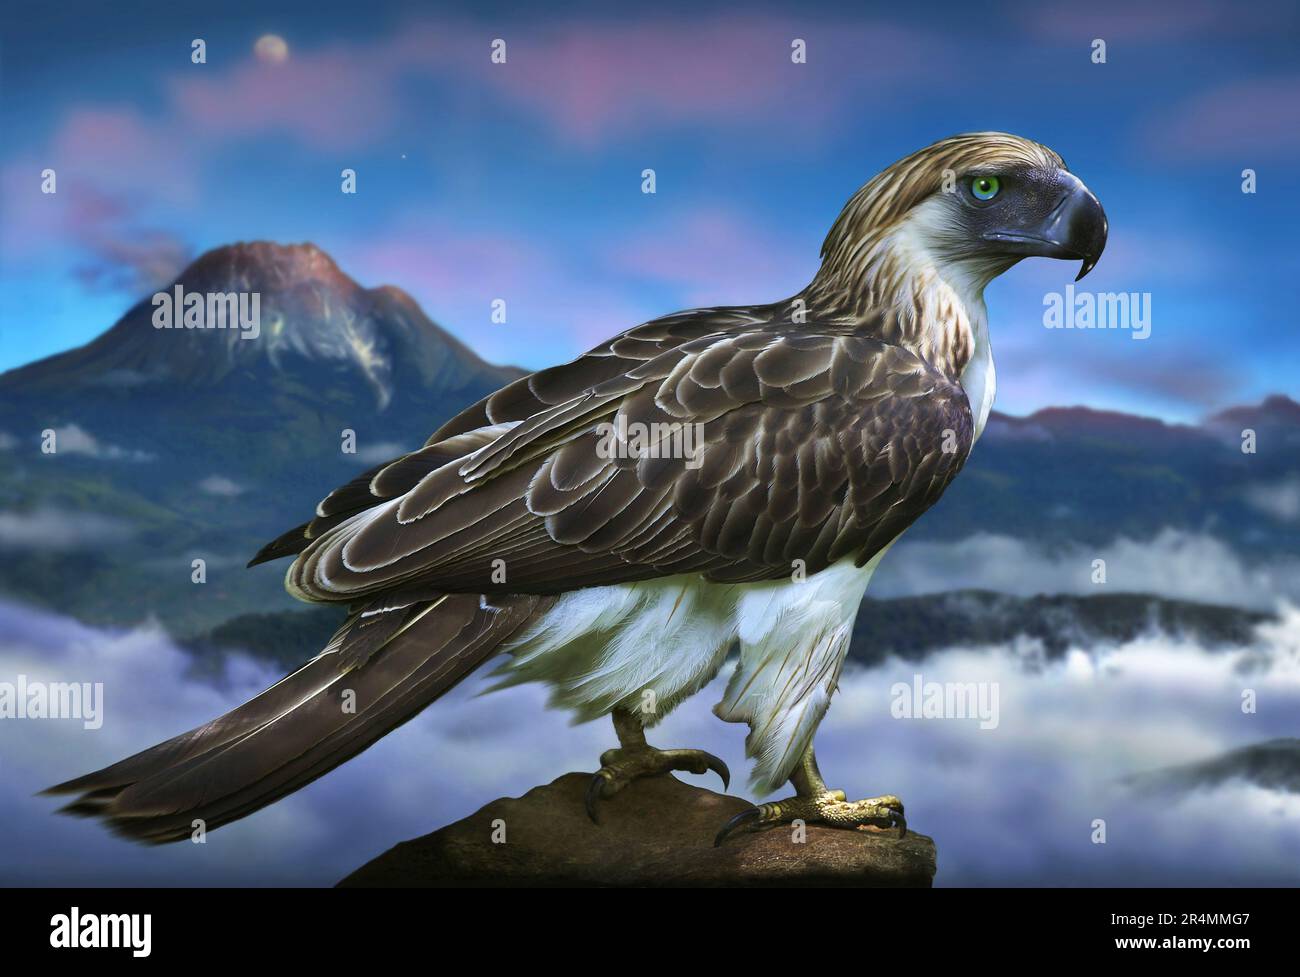 Image stylisée d'un aigle philippin sur fond de montagne spectaculaire. Banque D'Images